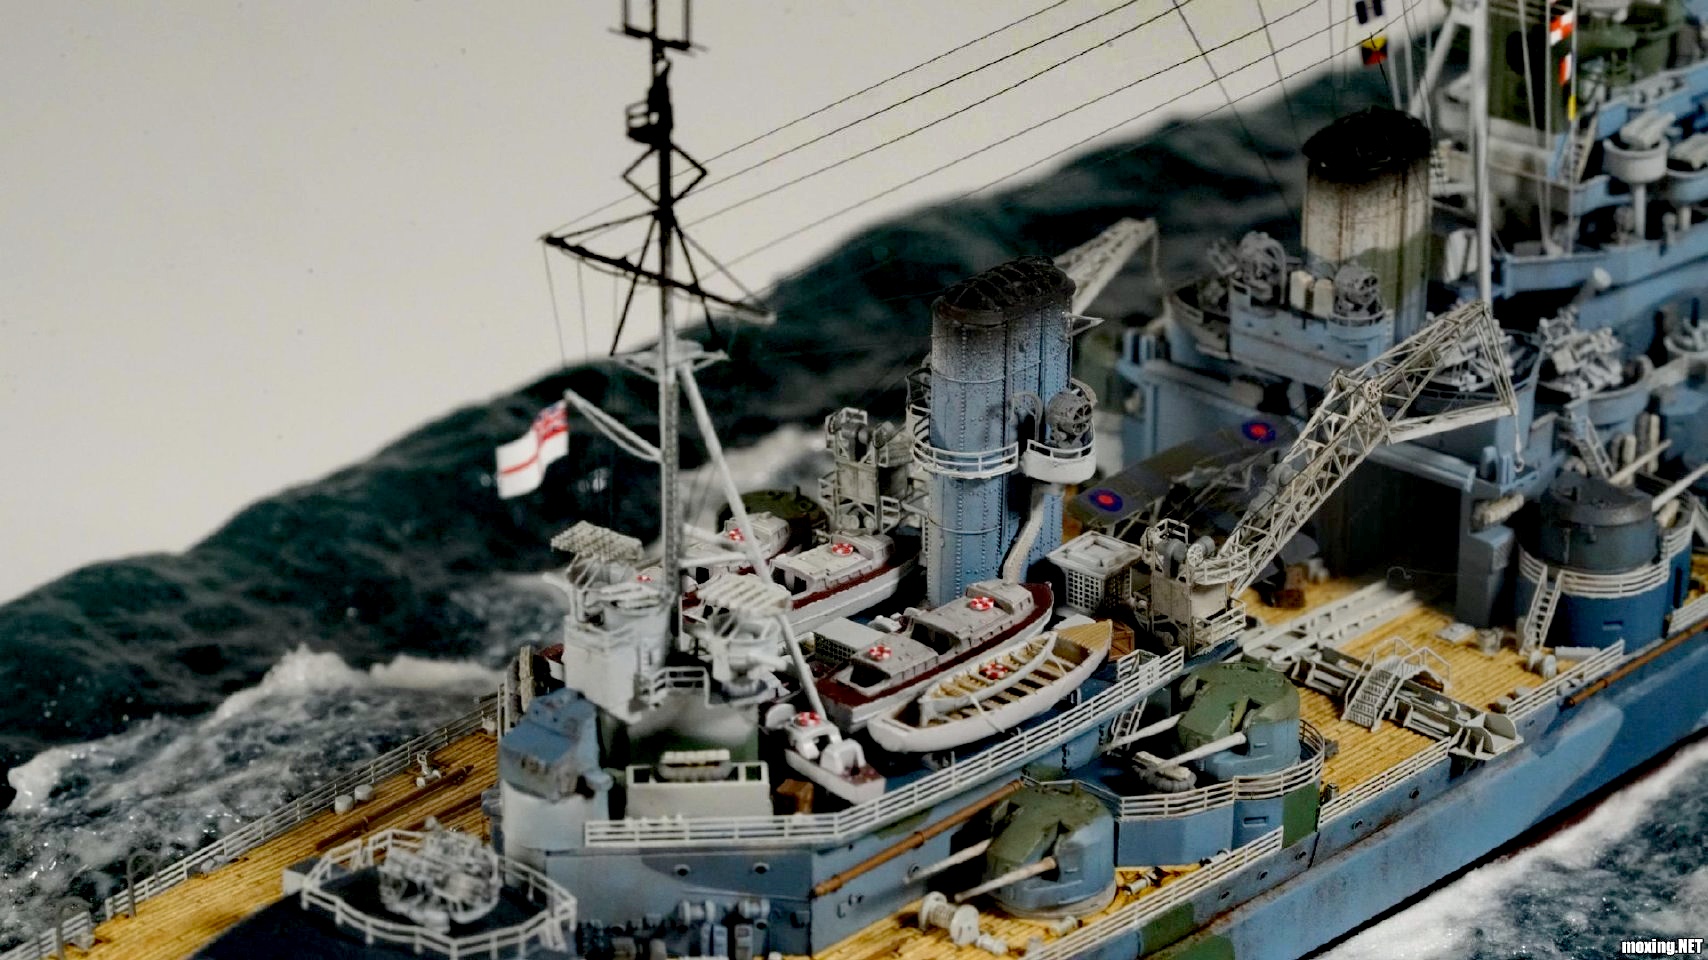 军模欣赏:1/700 威尔士亲王号战列舰模型